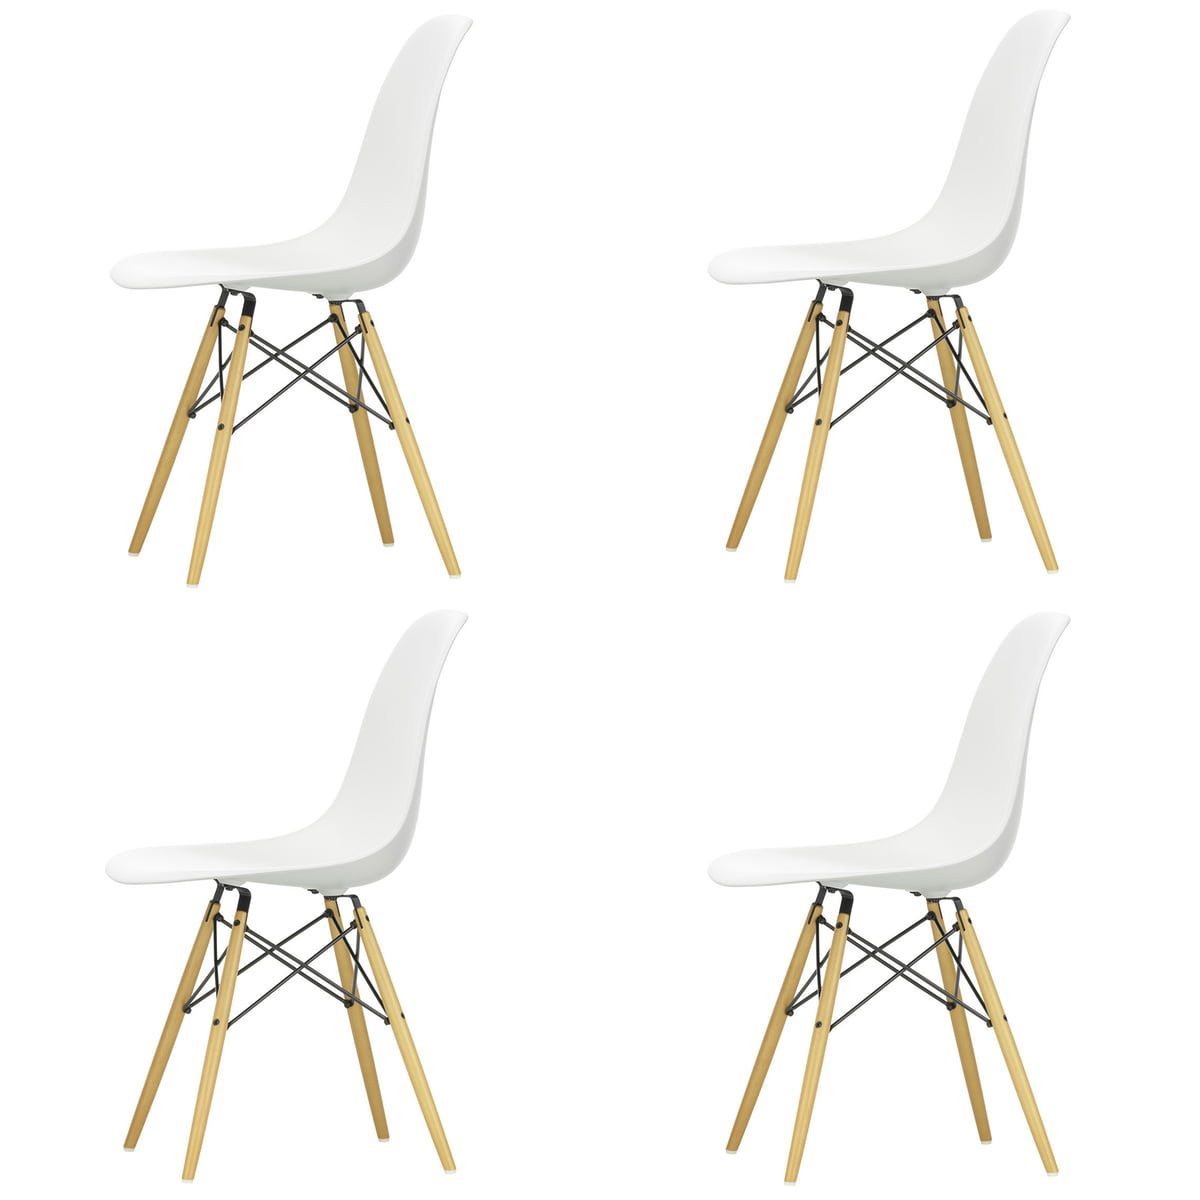 Vertrouwelijk Konijn Geboorteplaats Actie: 4x vitra - Eames plastic stoel van eames | Connox